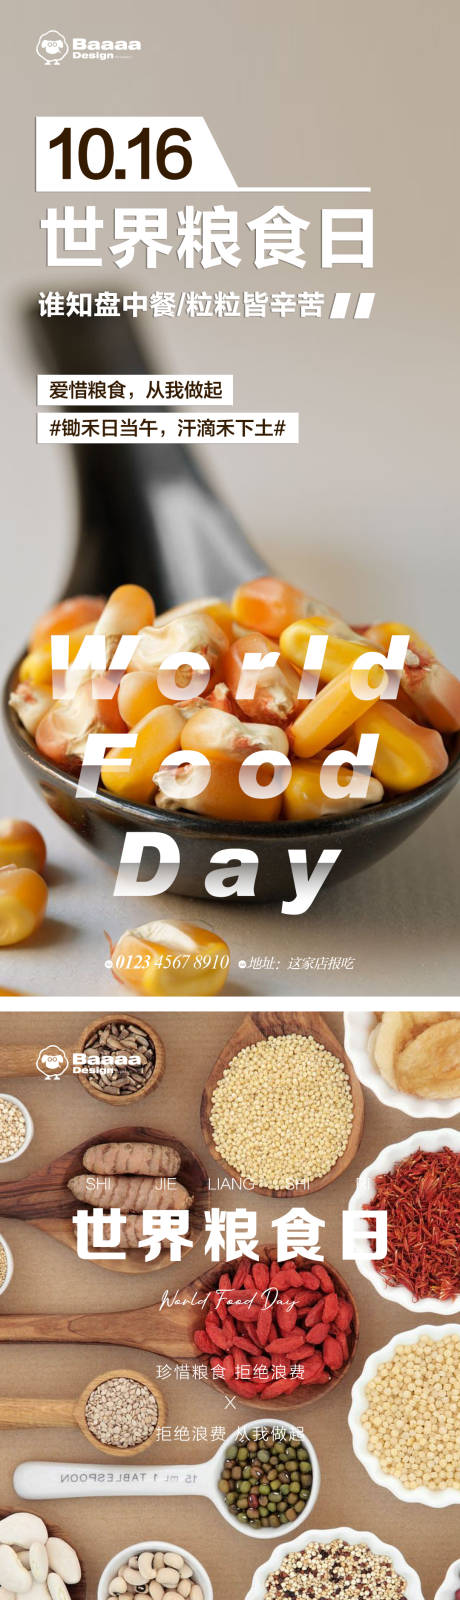 世界粮食日节日海报